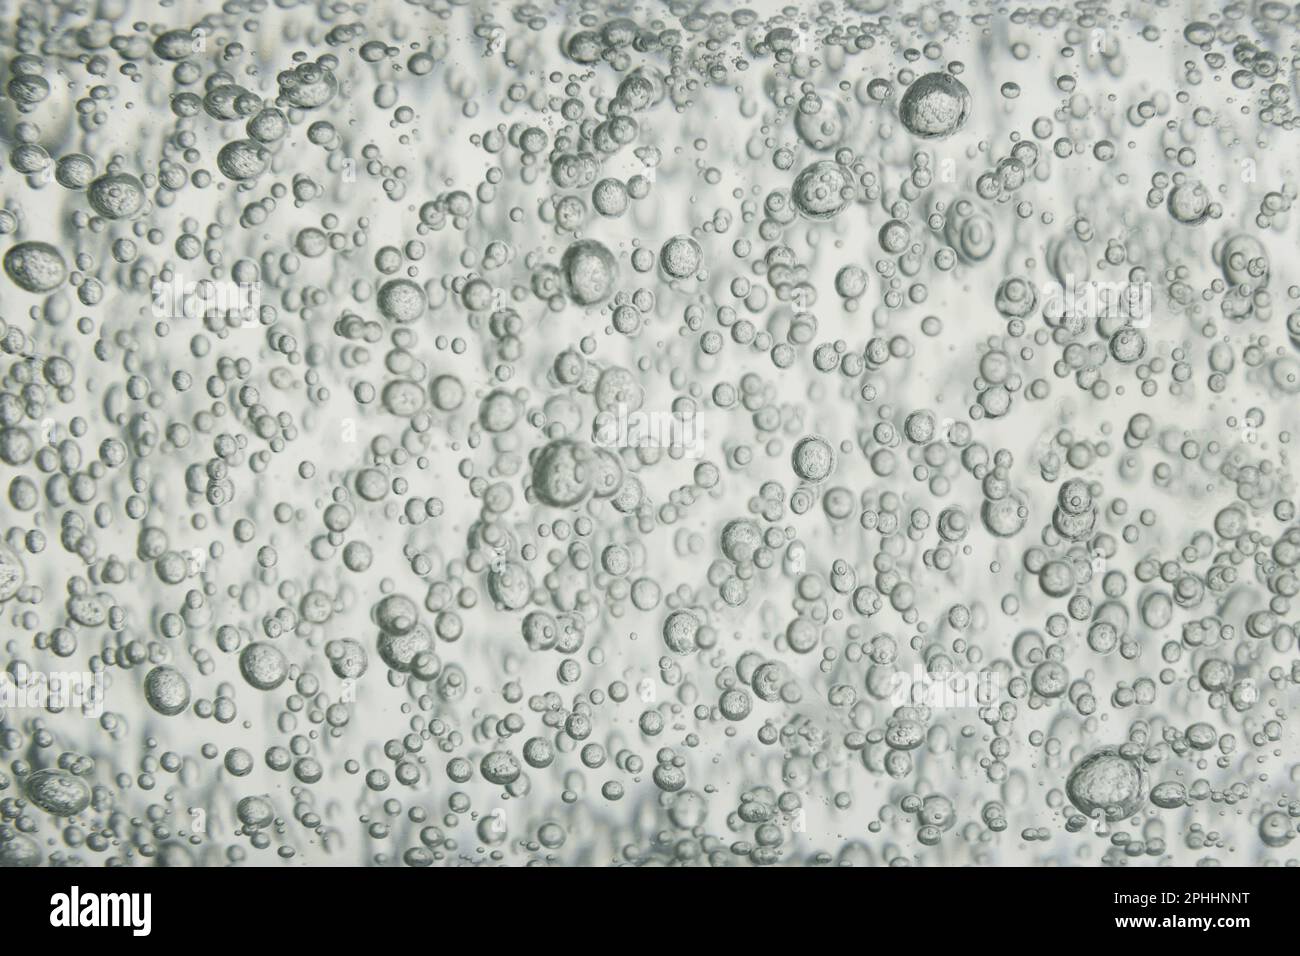 Gel d'acide hyaluronique. Photo macro. Bruit de fond avec bulles d'oxygène. Banque D'Images